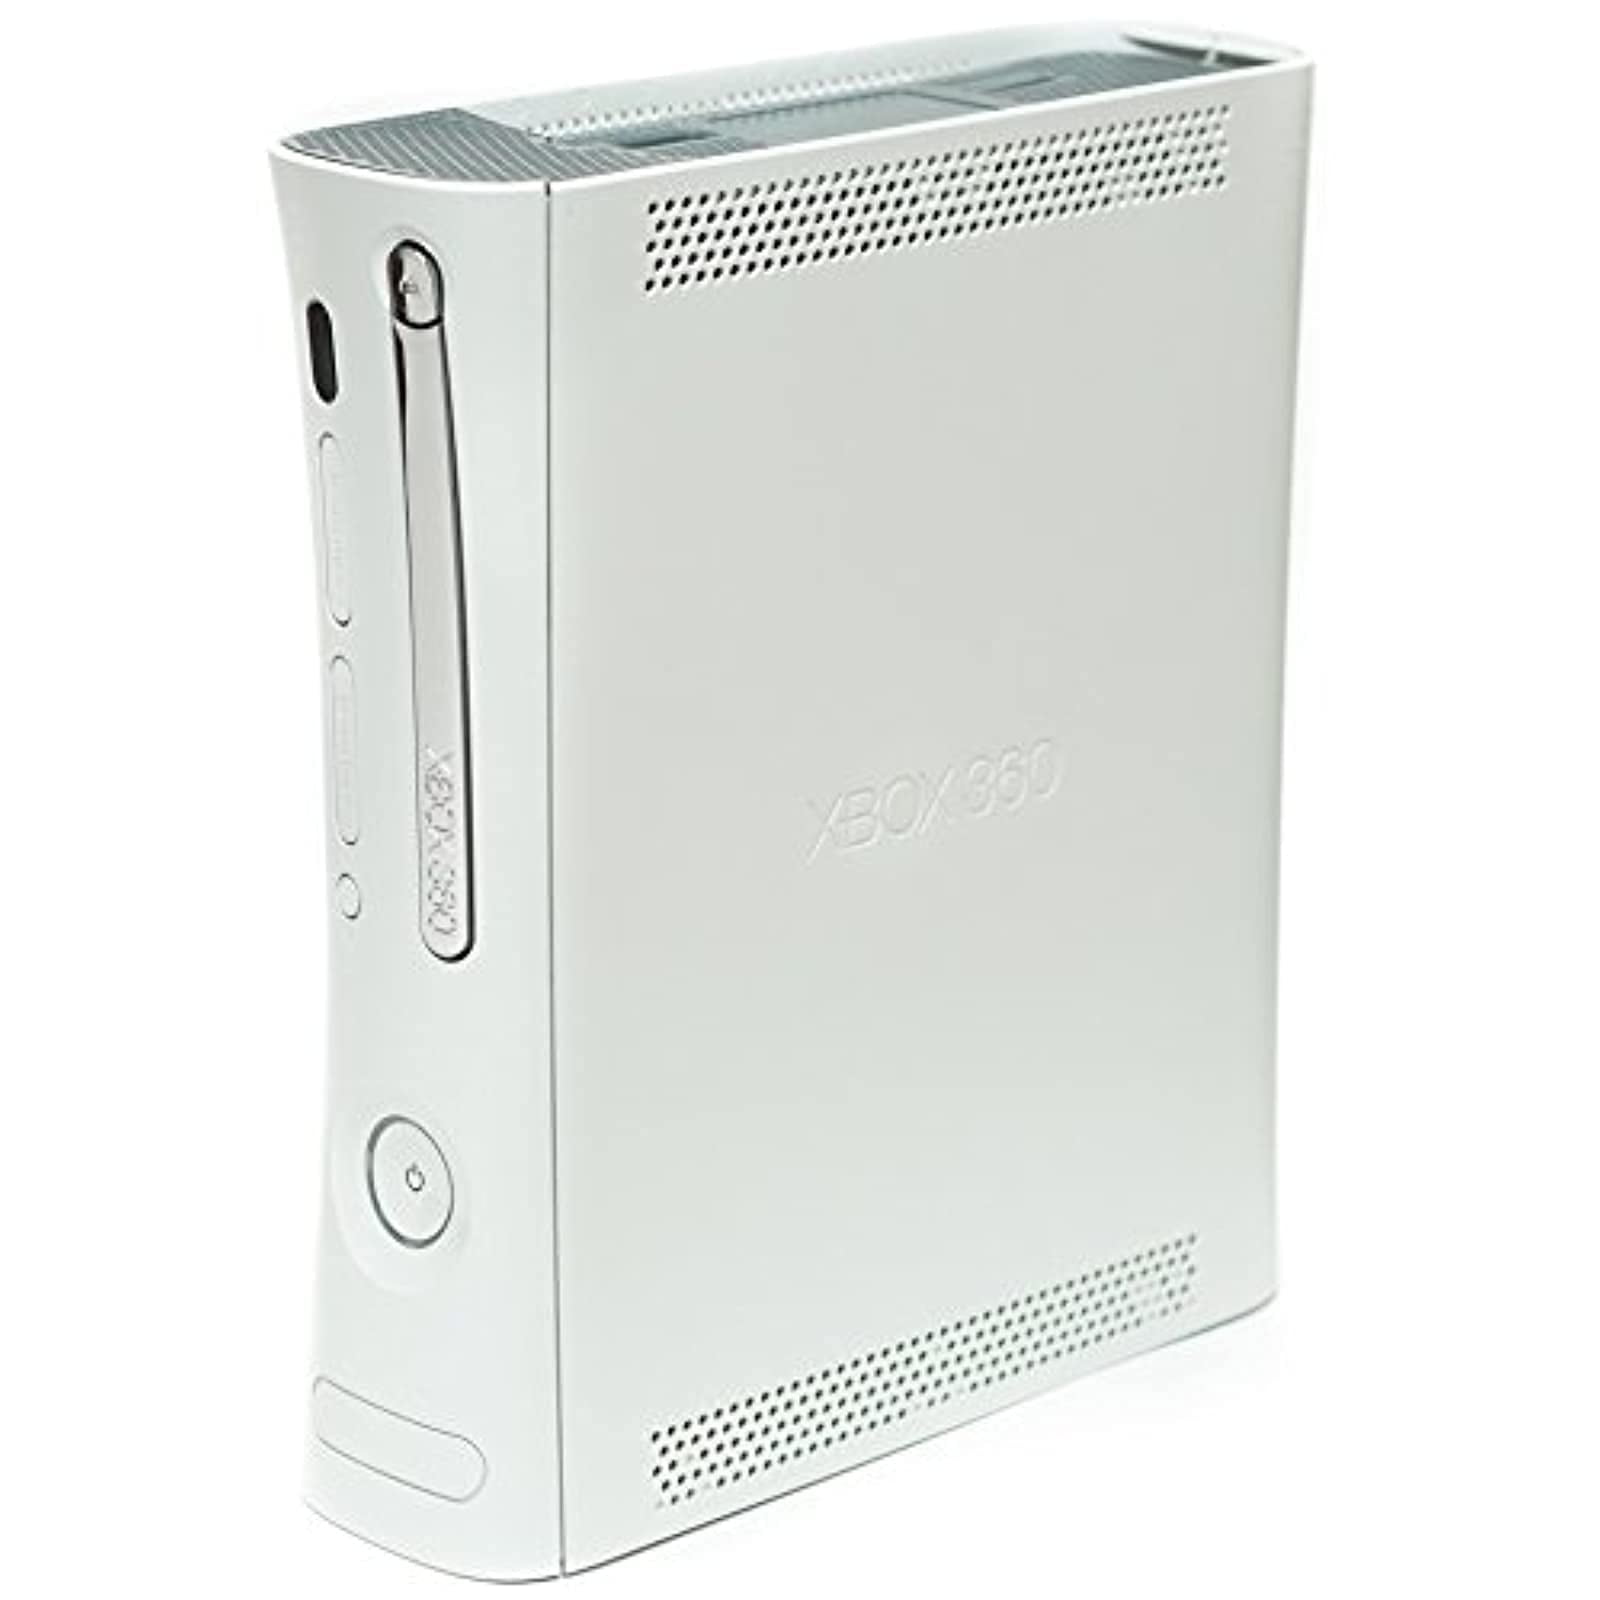 Restored White Xbox 360 Fat Console 20GB NON-HDMI Version (Refurbished)